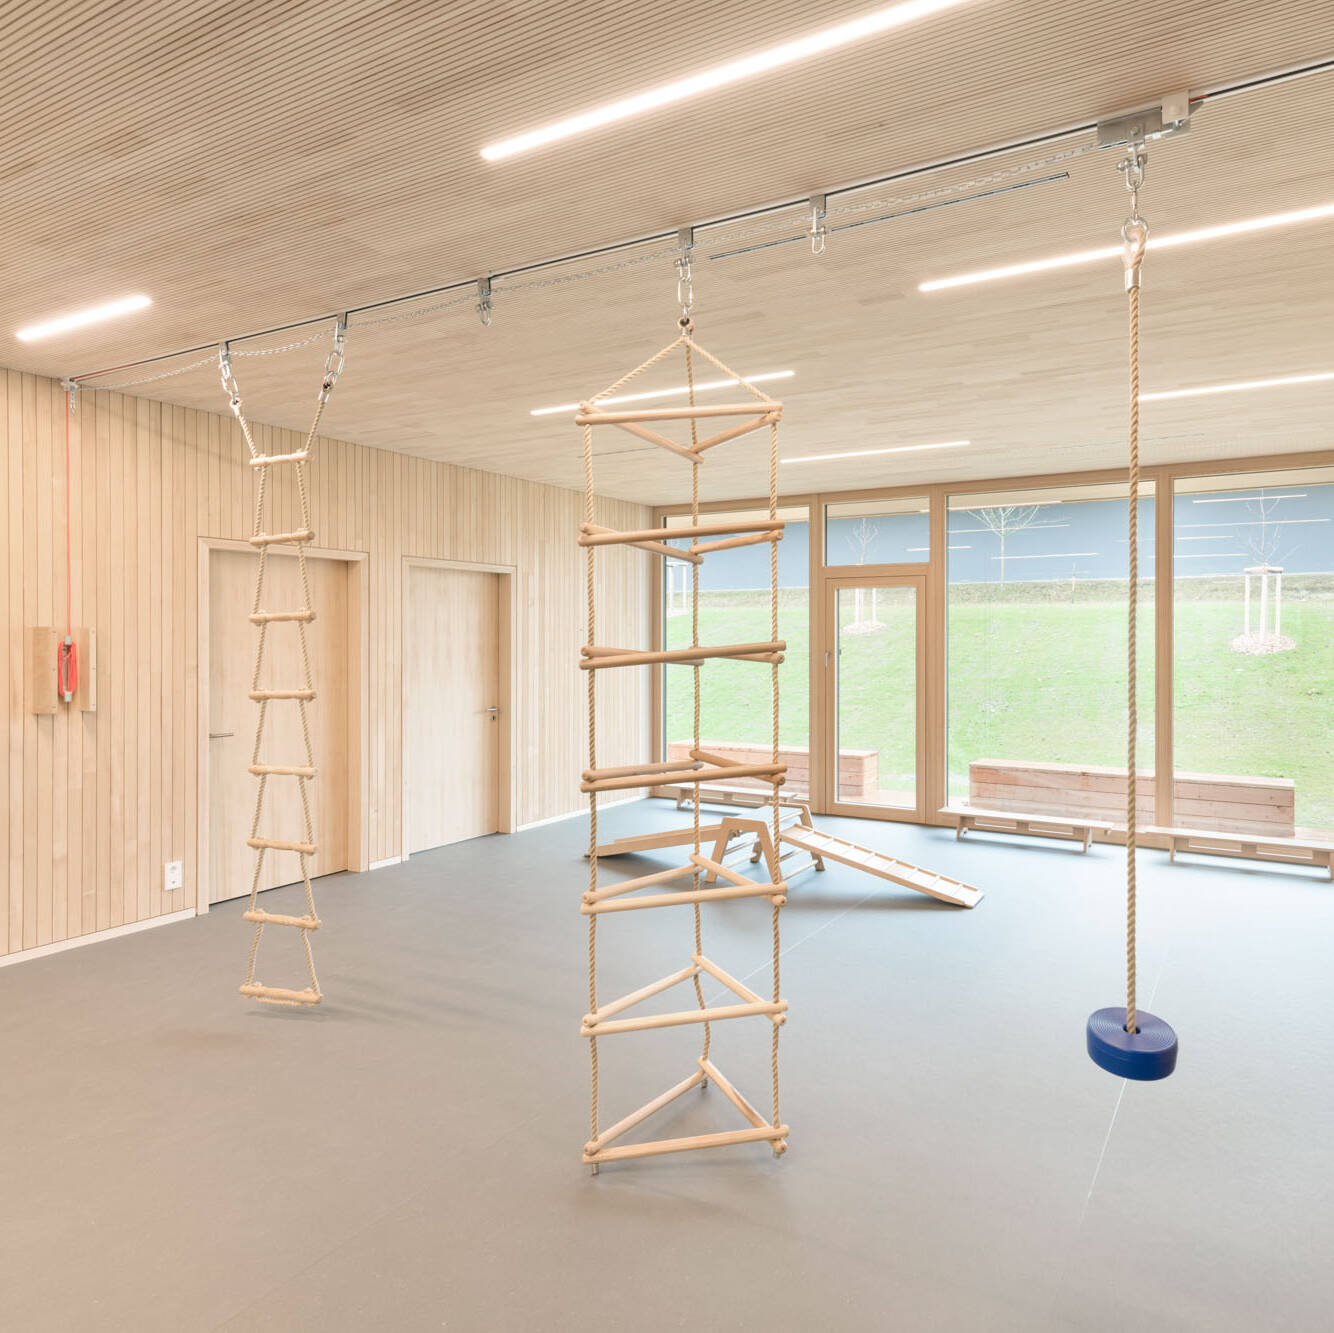 Decke in Turnhalle der Kinderkrippe Wiggensbach wird mit neuer Akustikverkleidung aus Holz ausgestattet